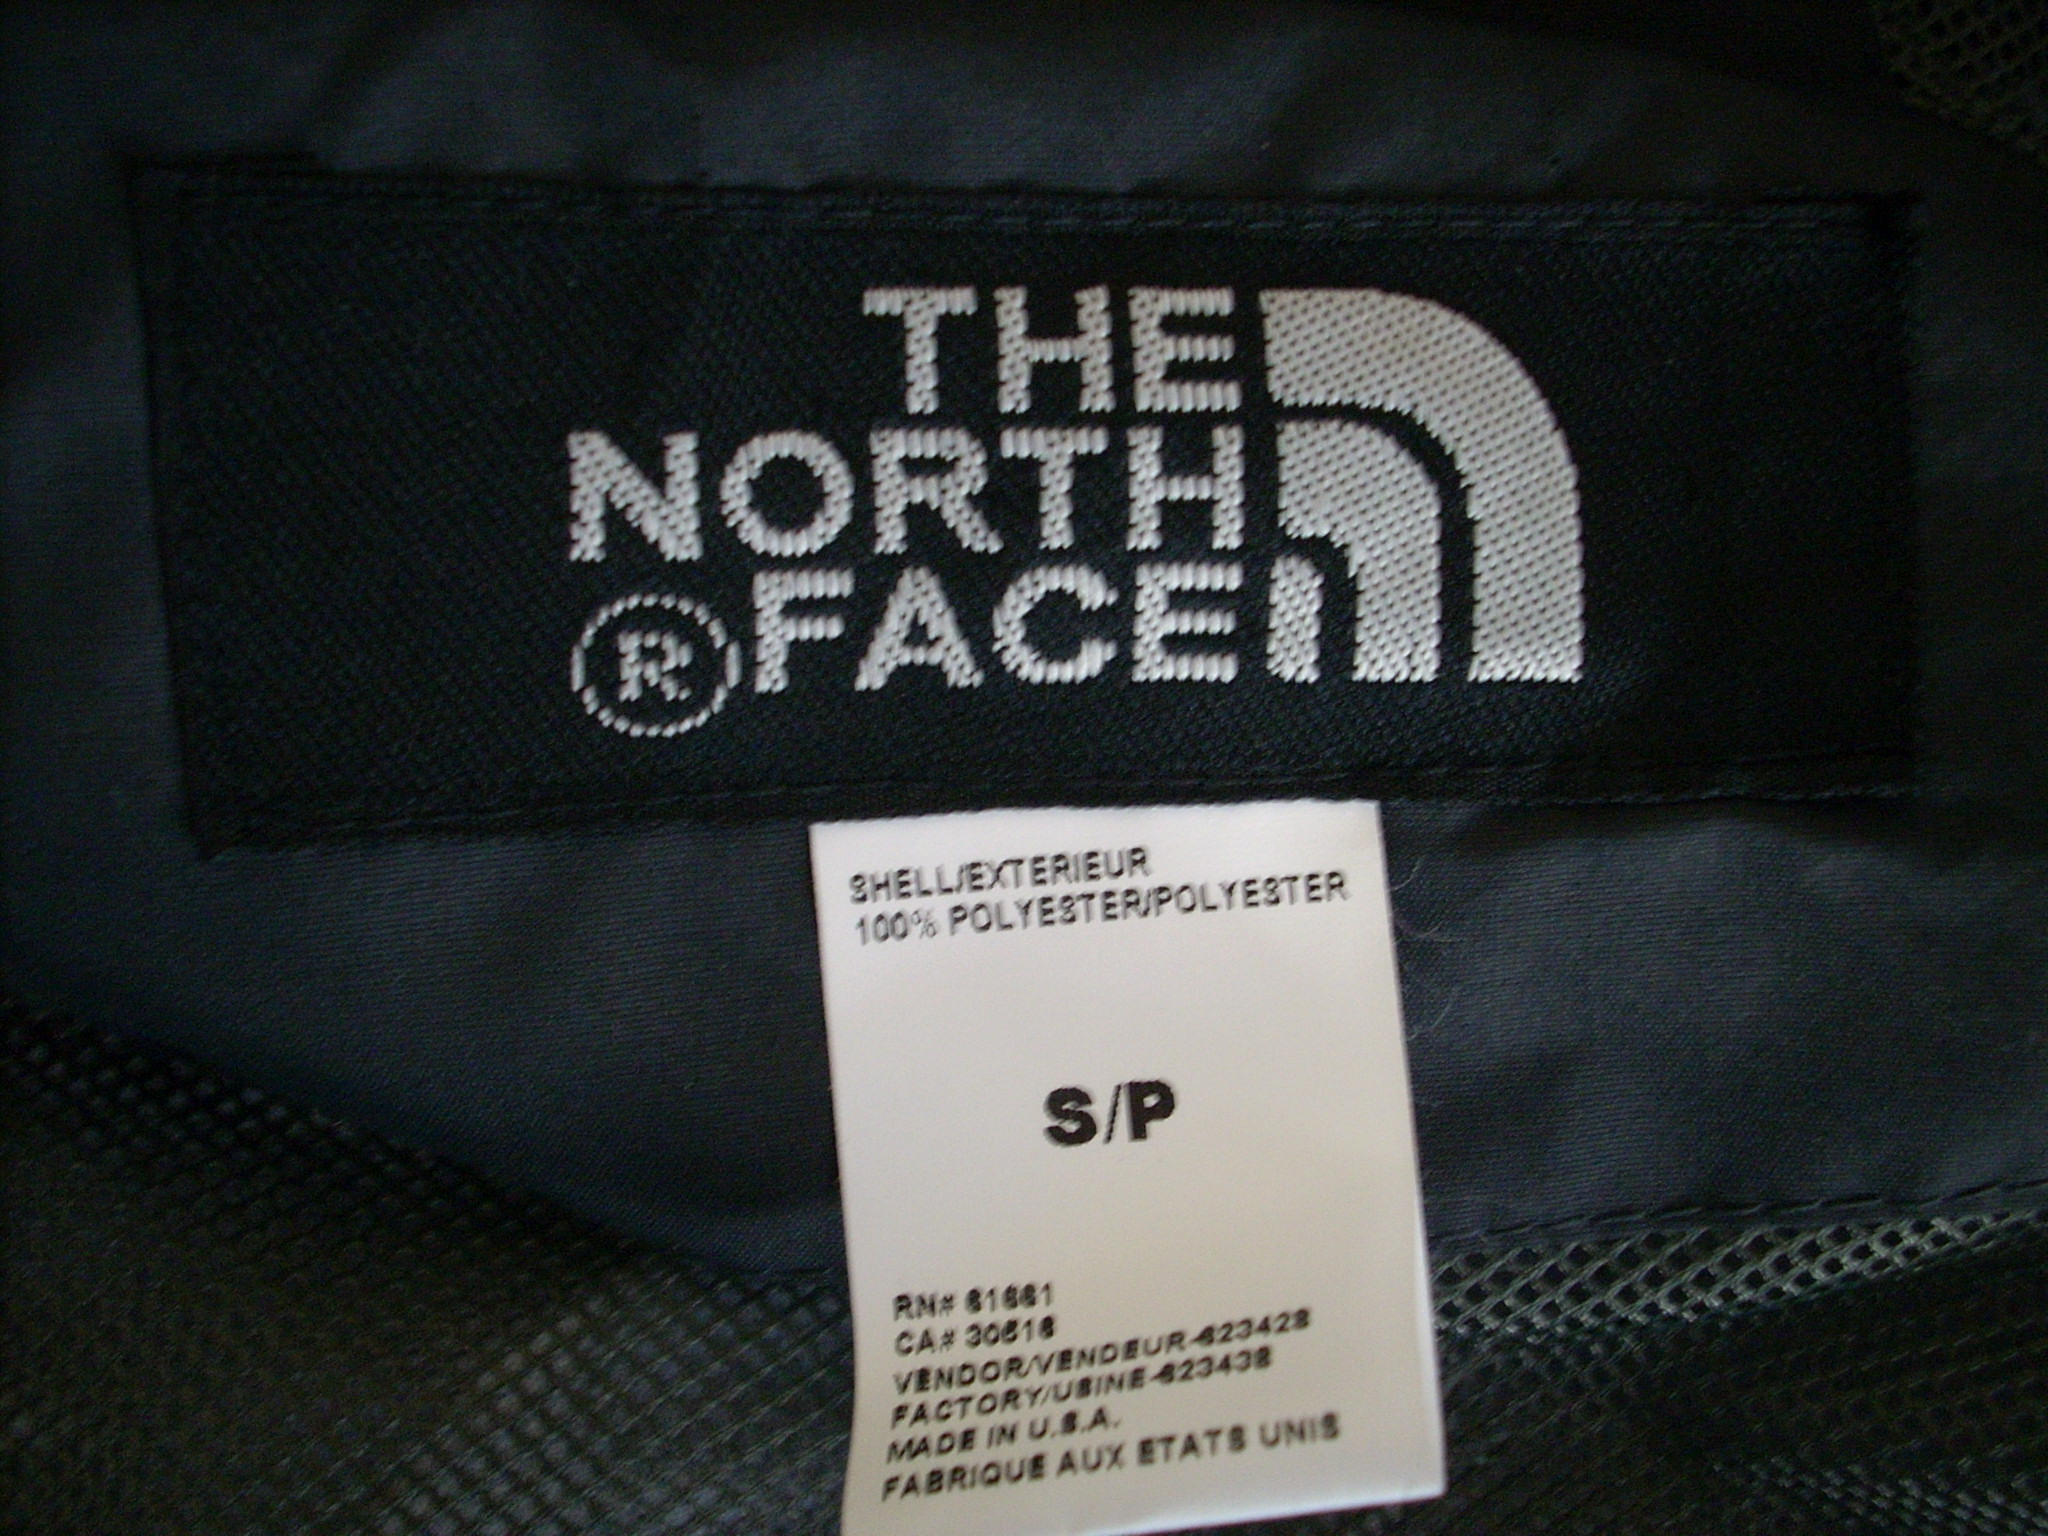 Fake north face Logos